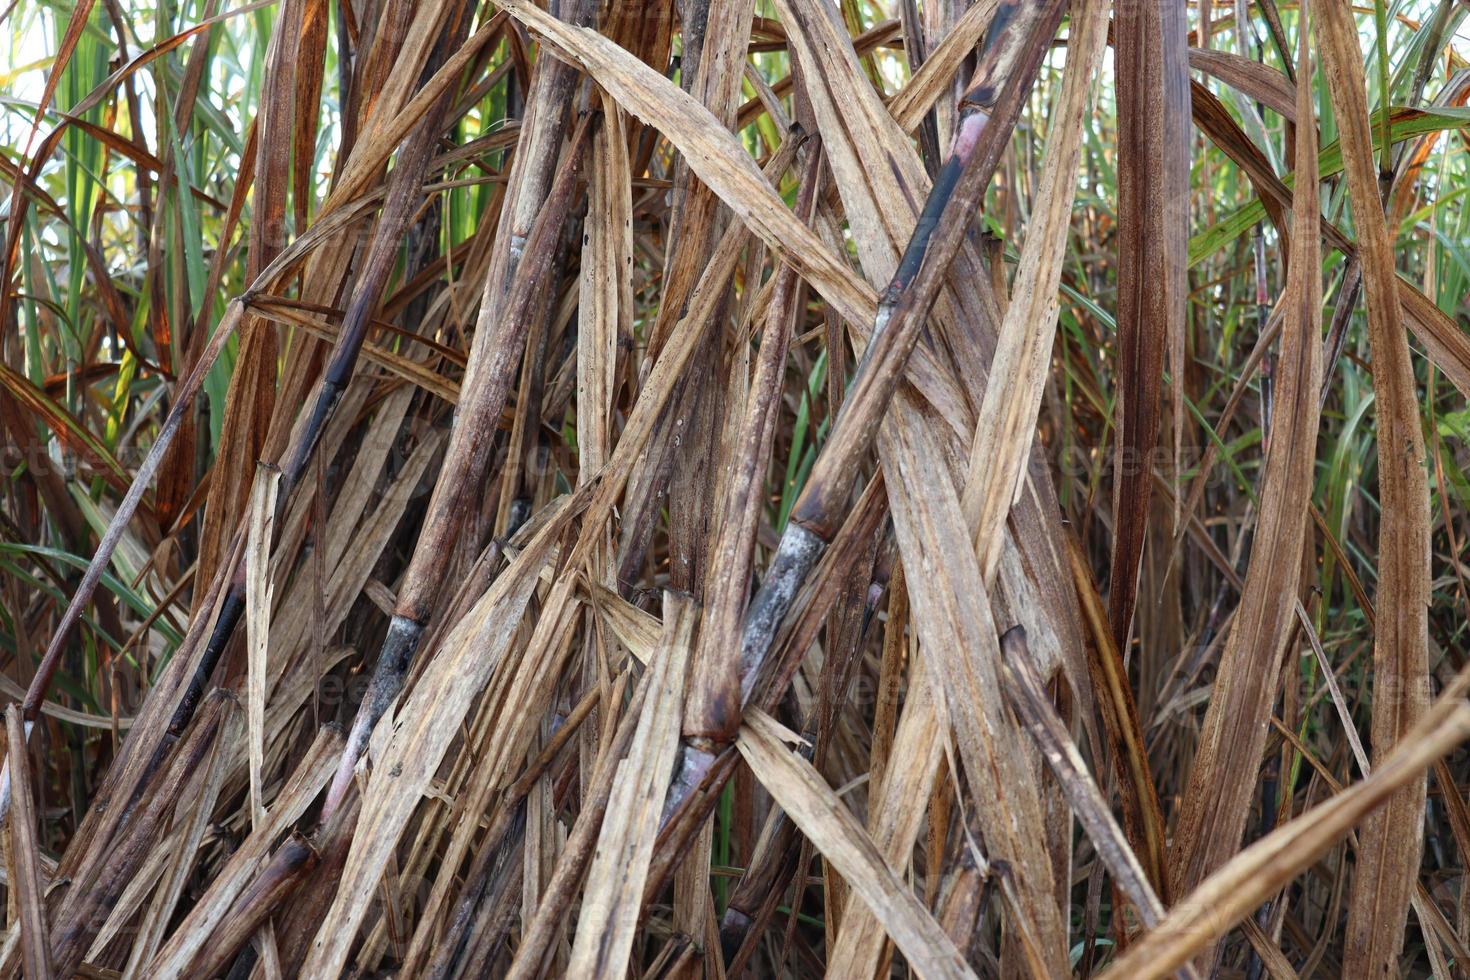 sockerrörfast närbild på fält för skörd foto